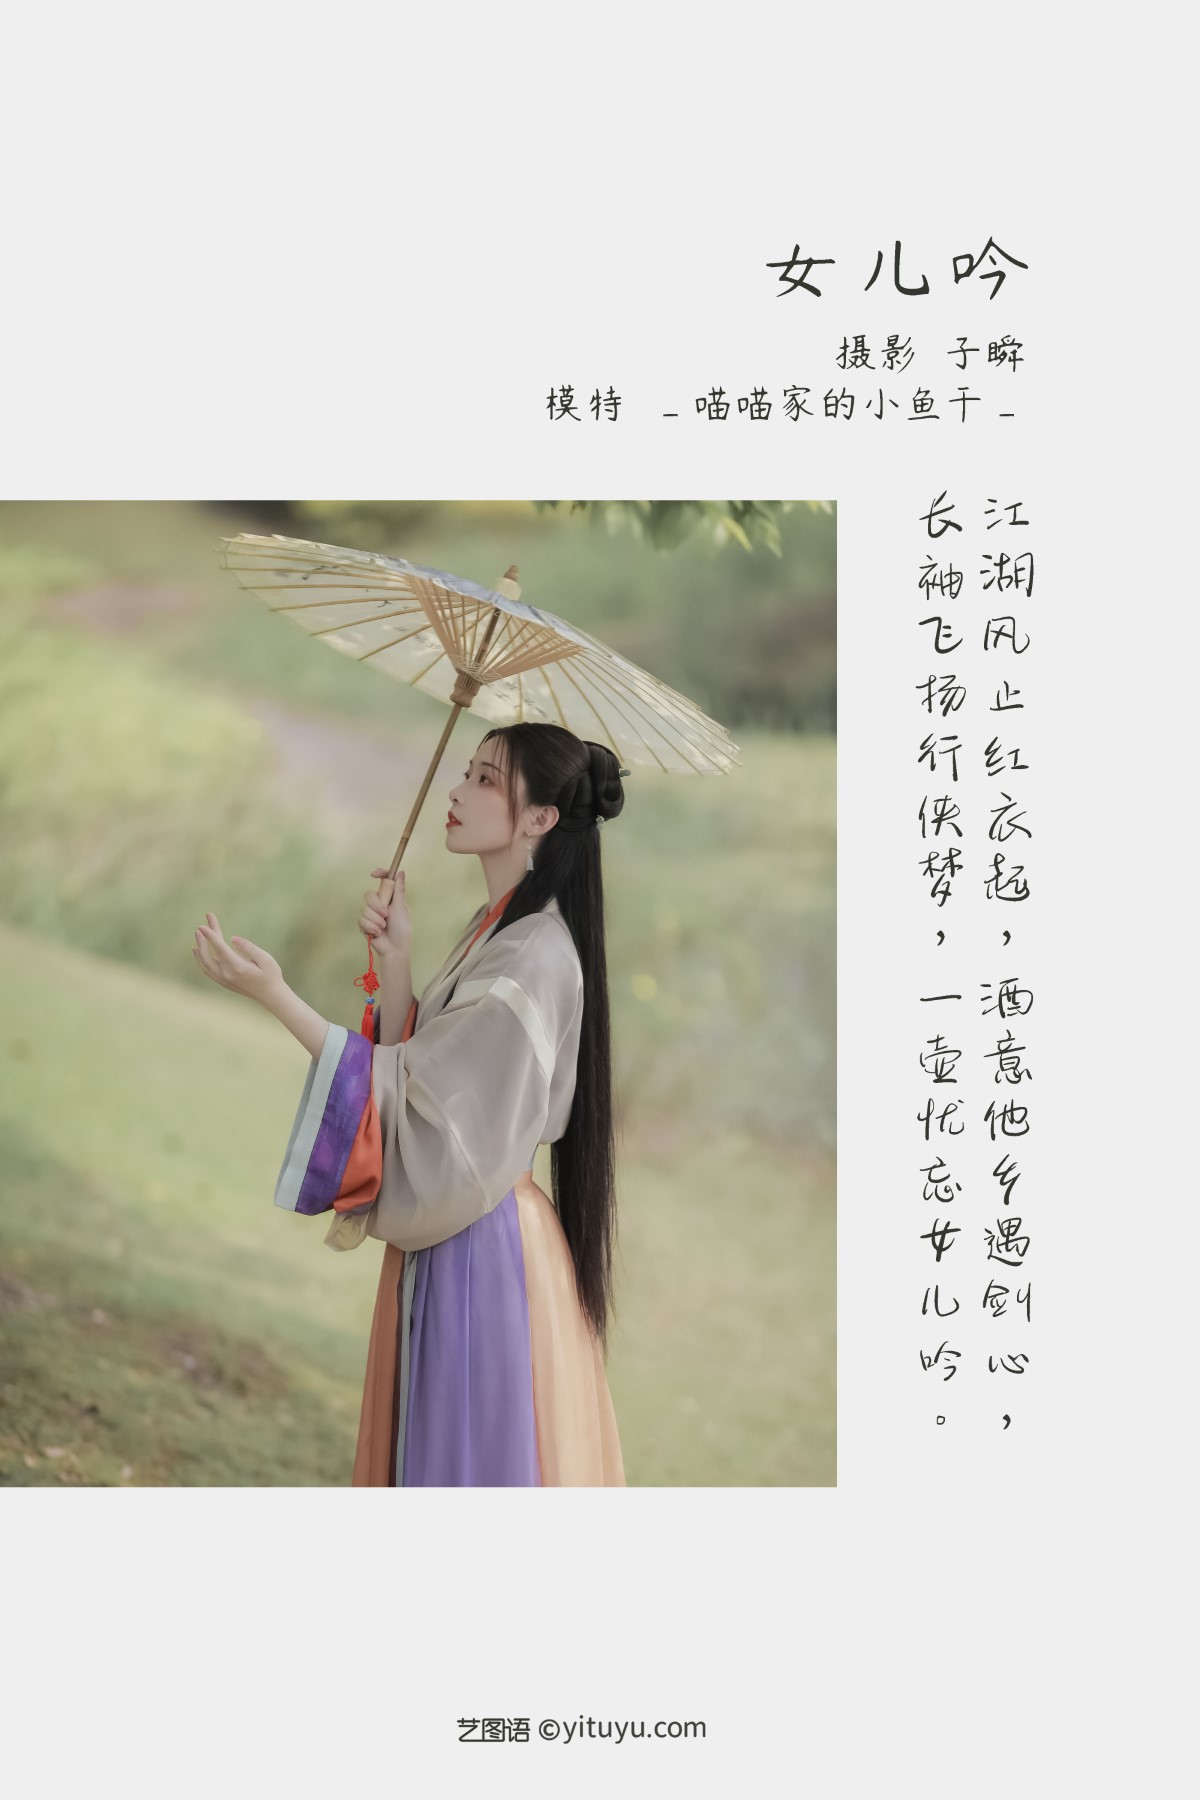 YiTuYu艺图语 Vol 1347 Miao Miao Jia De Xiao Yu Gan 0001 8185977997.jpg